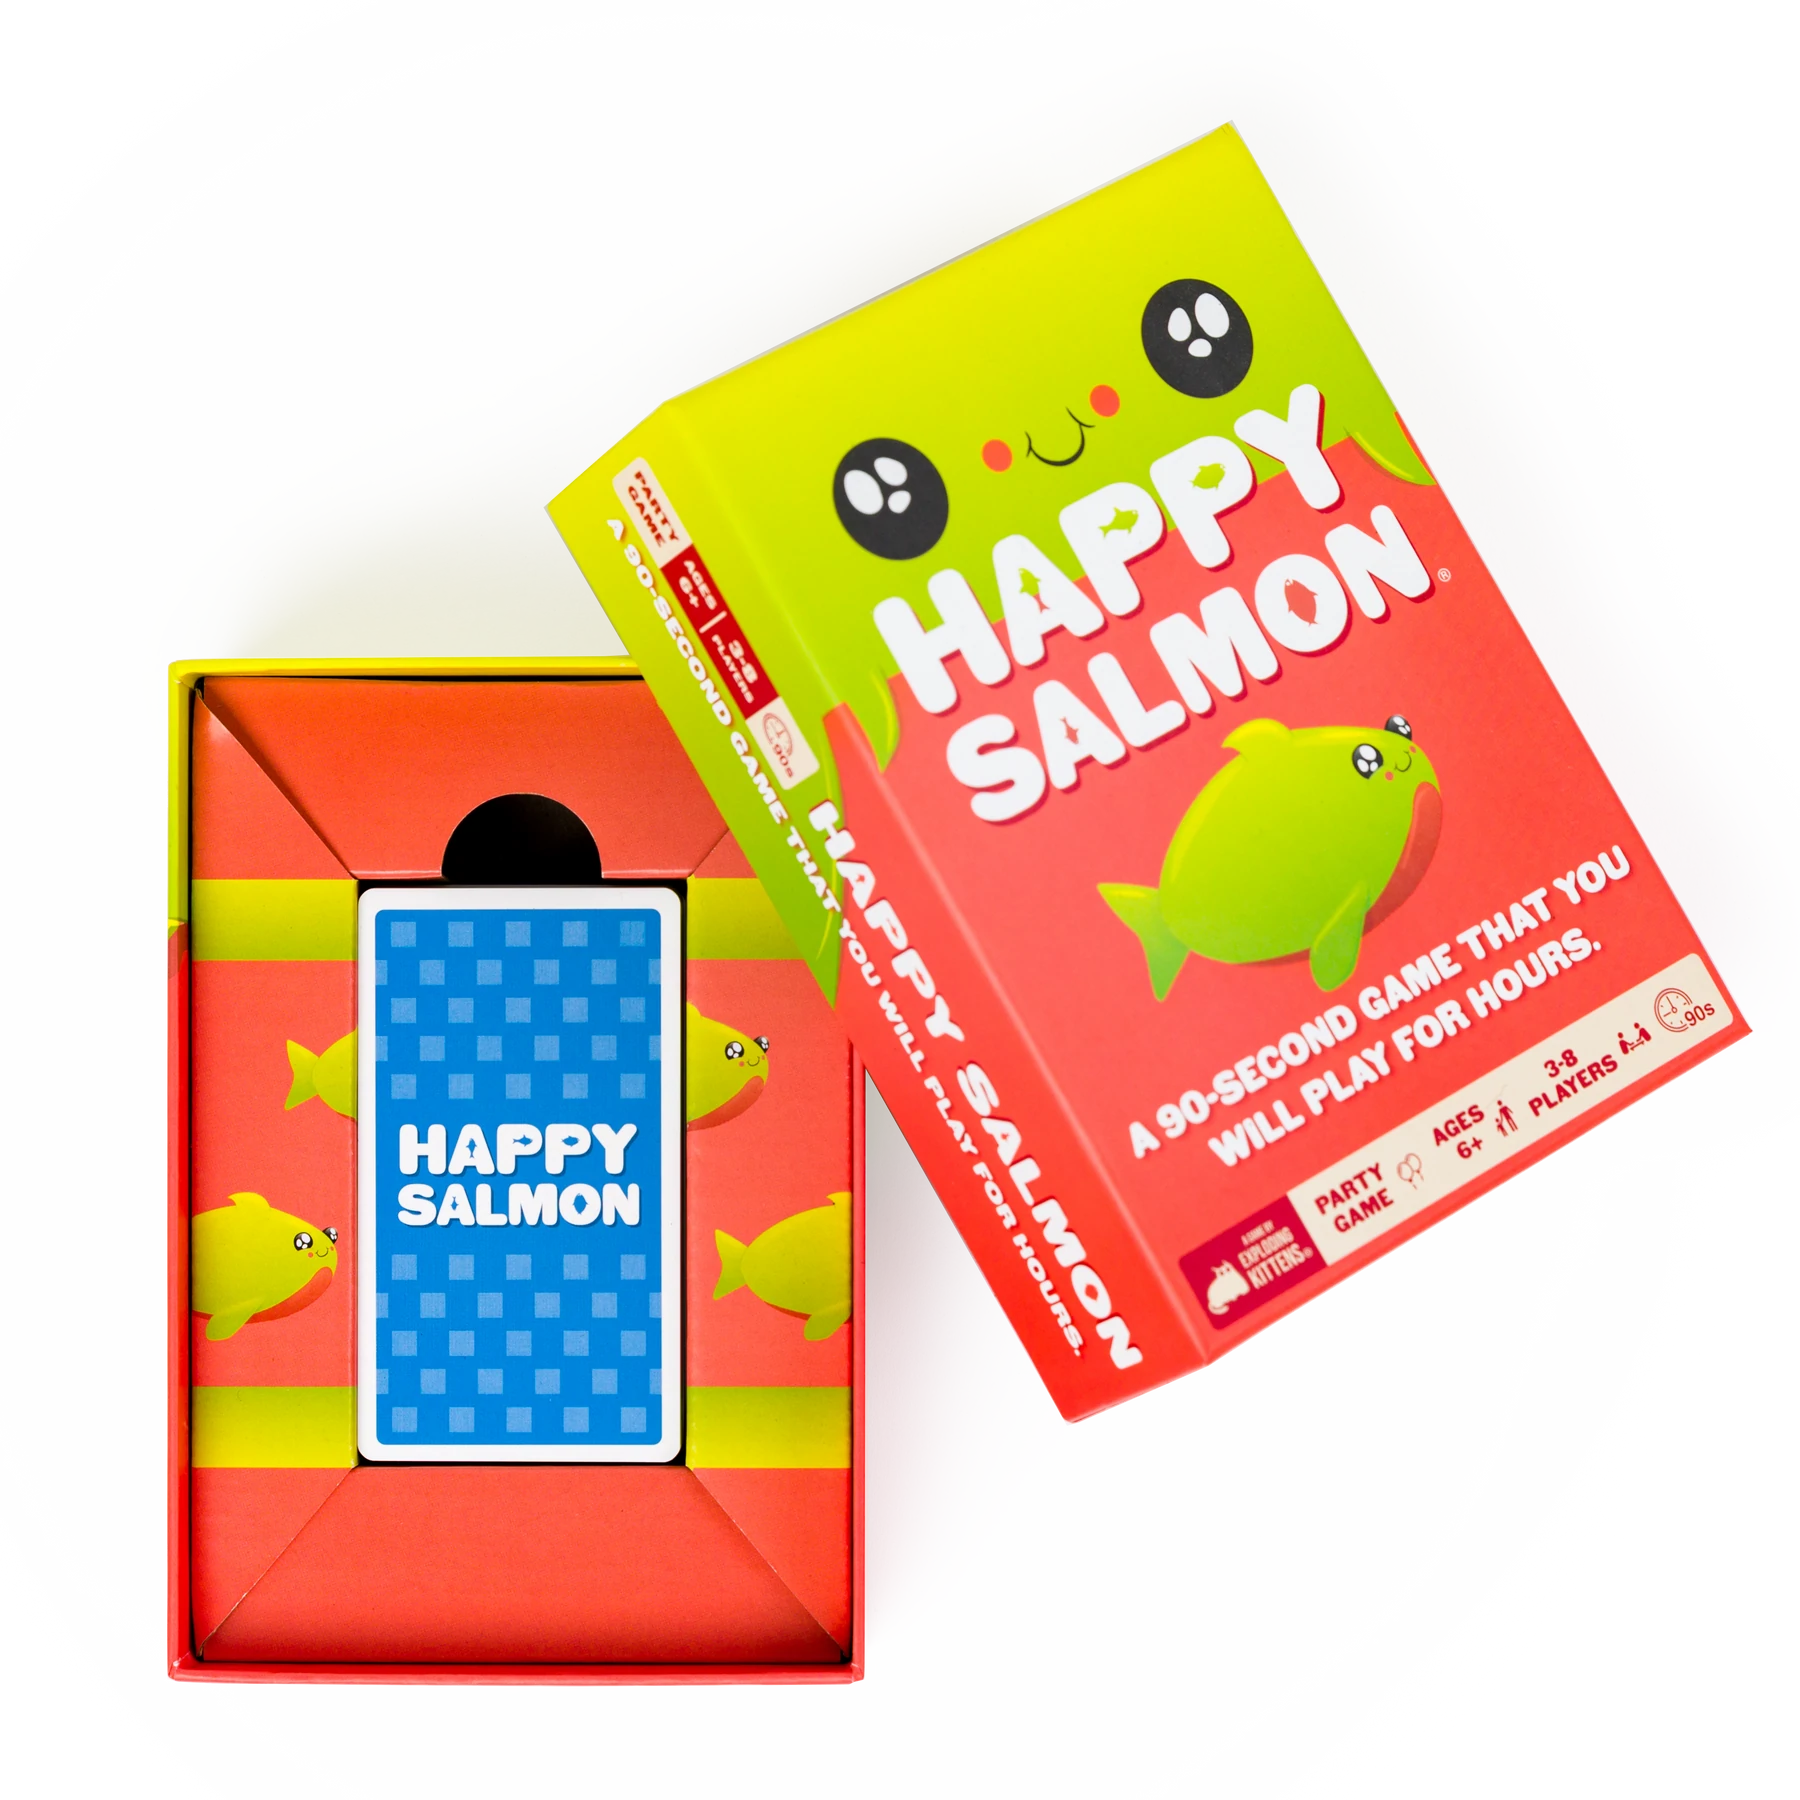 Happy Salmon Game